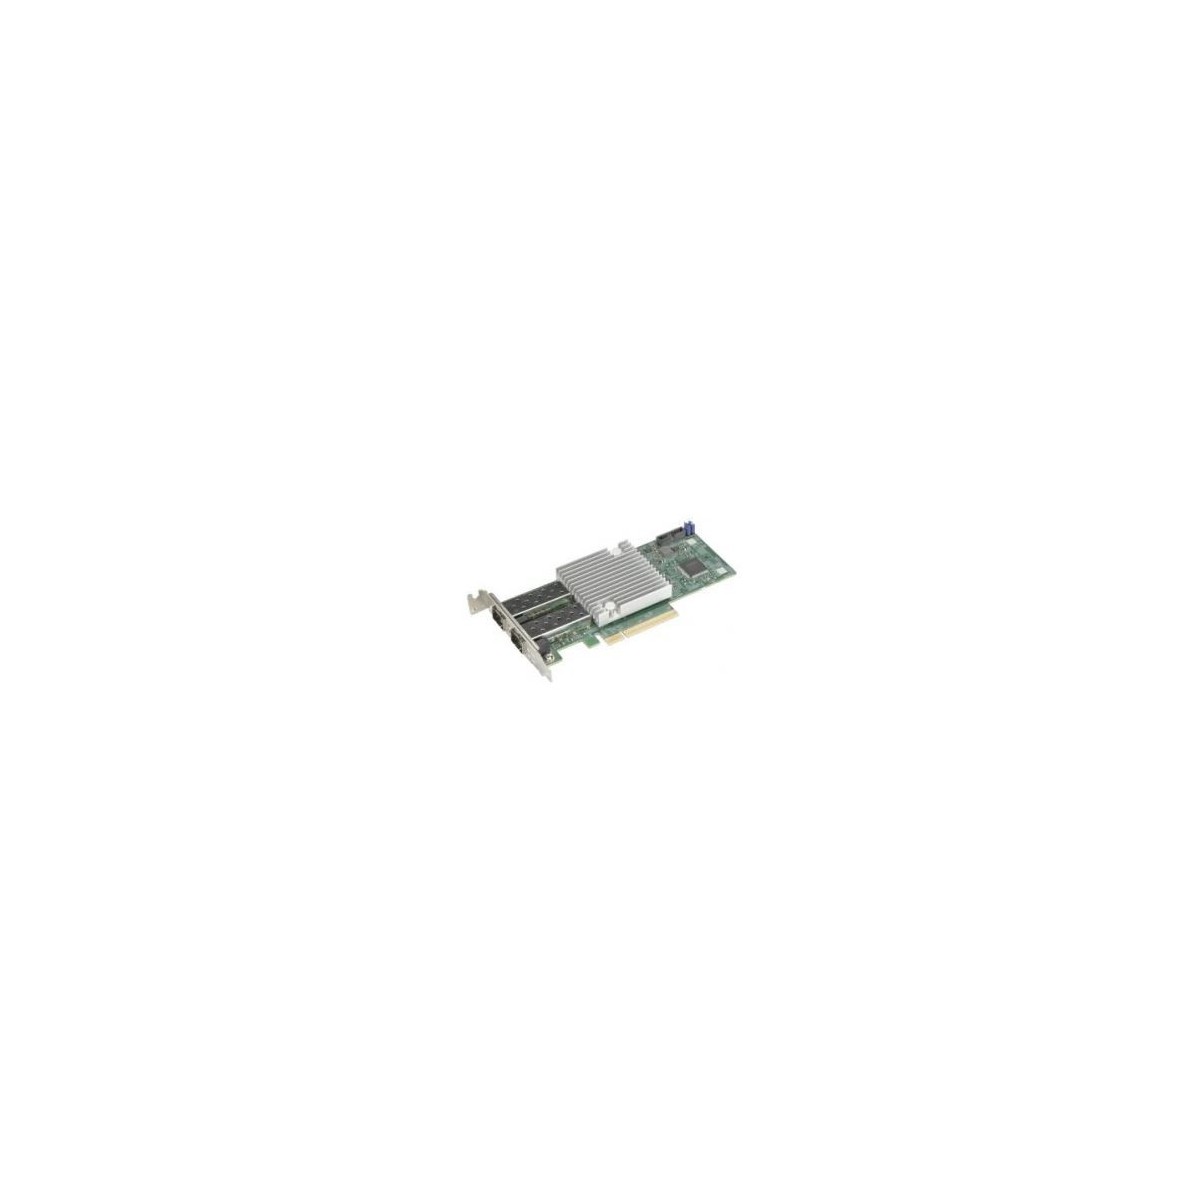 Supermicro PCIe Gen 4 standard low profile quad portSFP28basedonInt